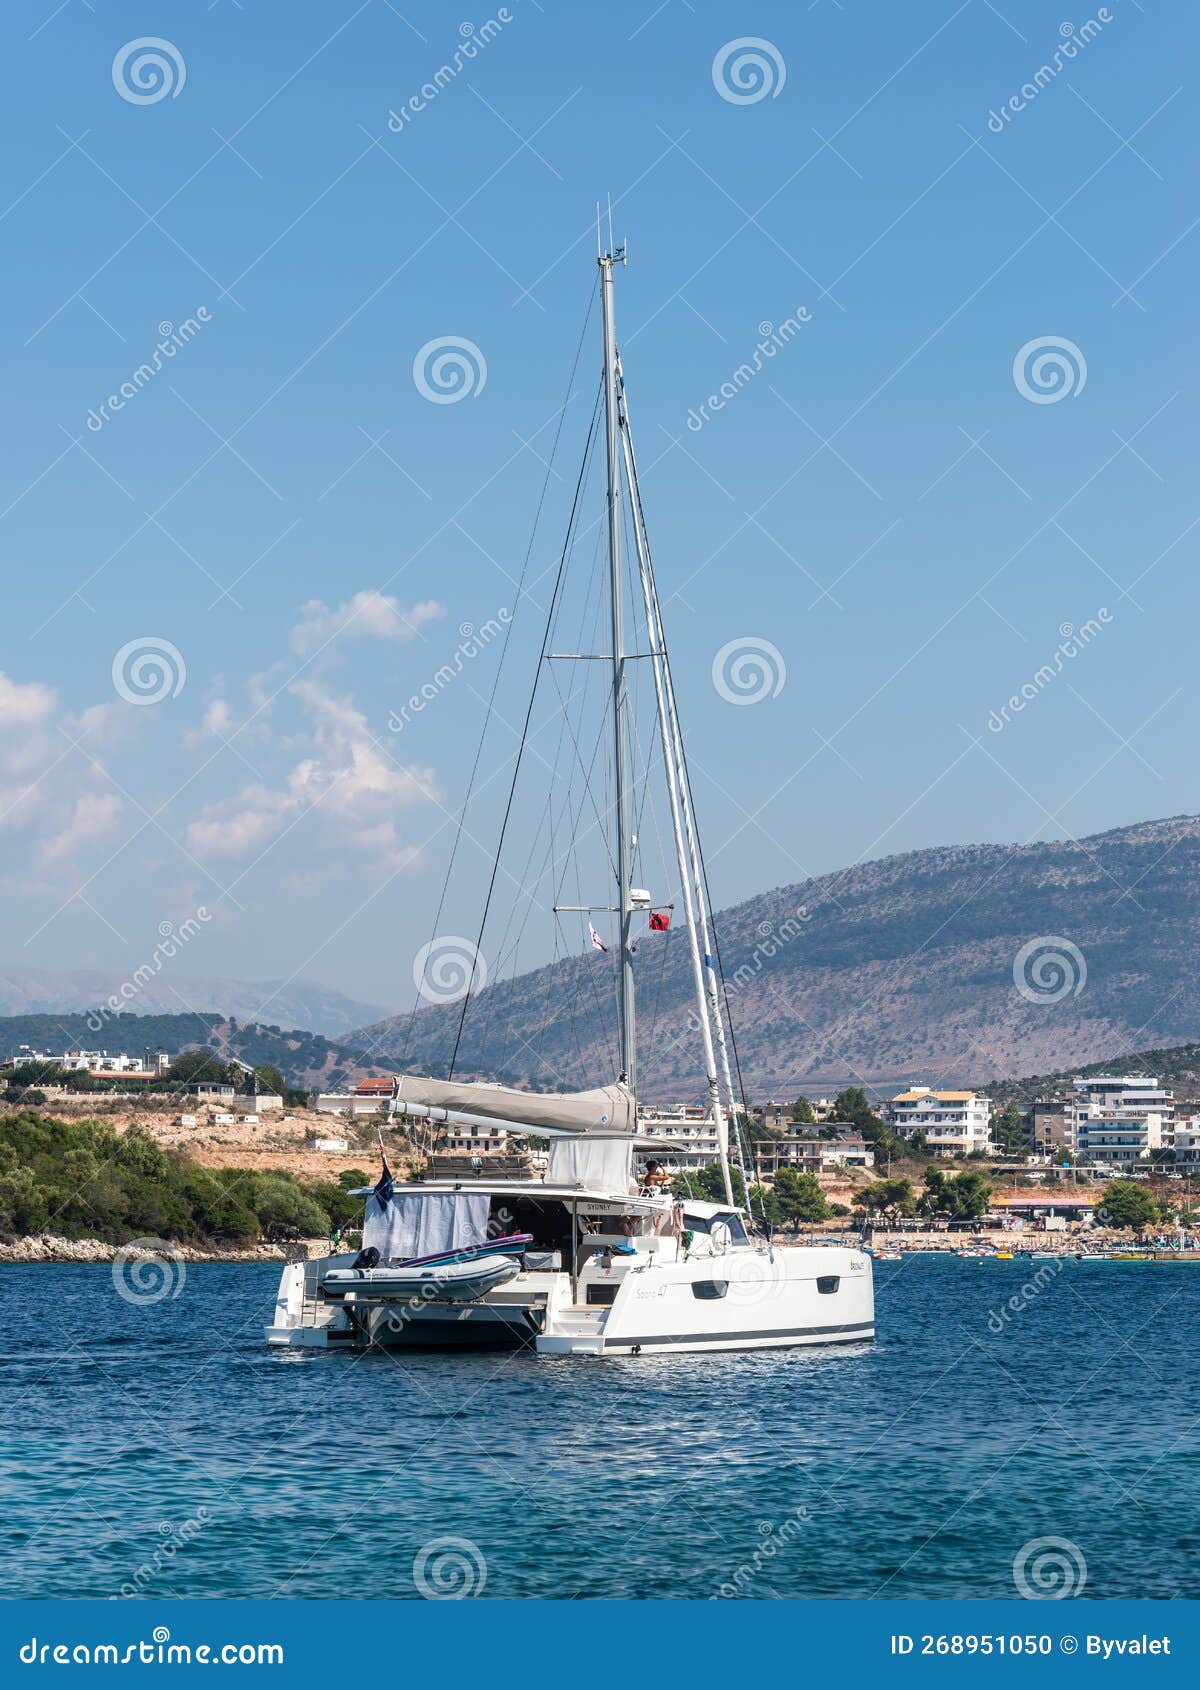 catamaran in albania